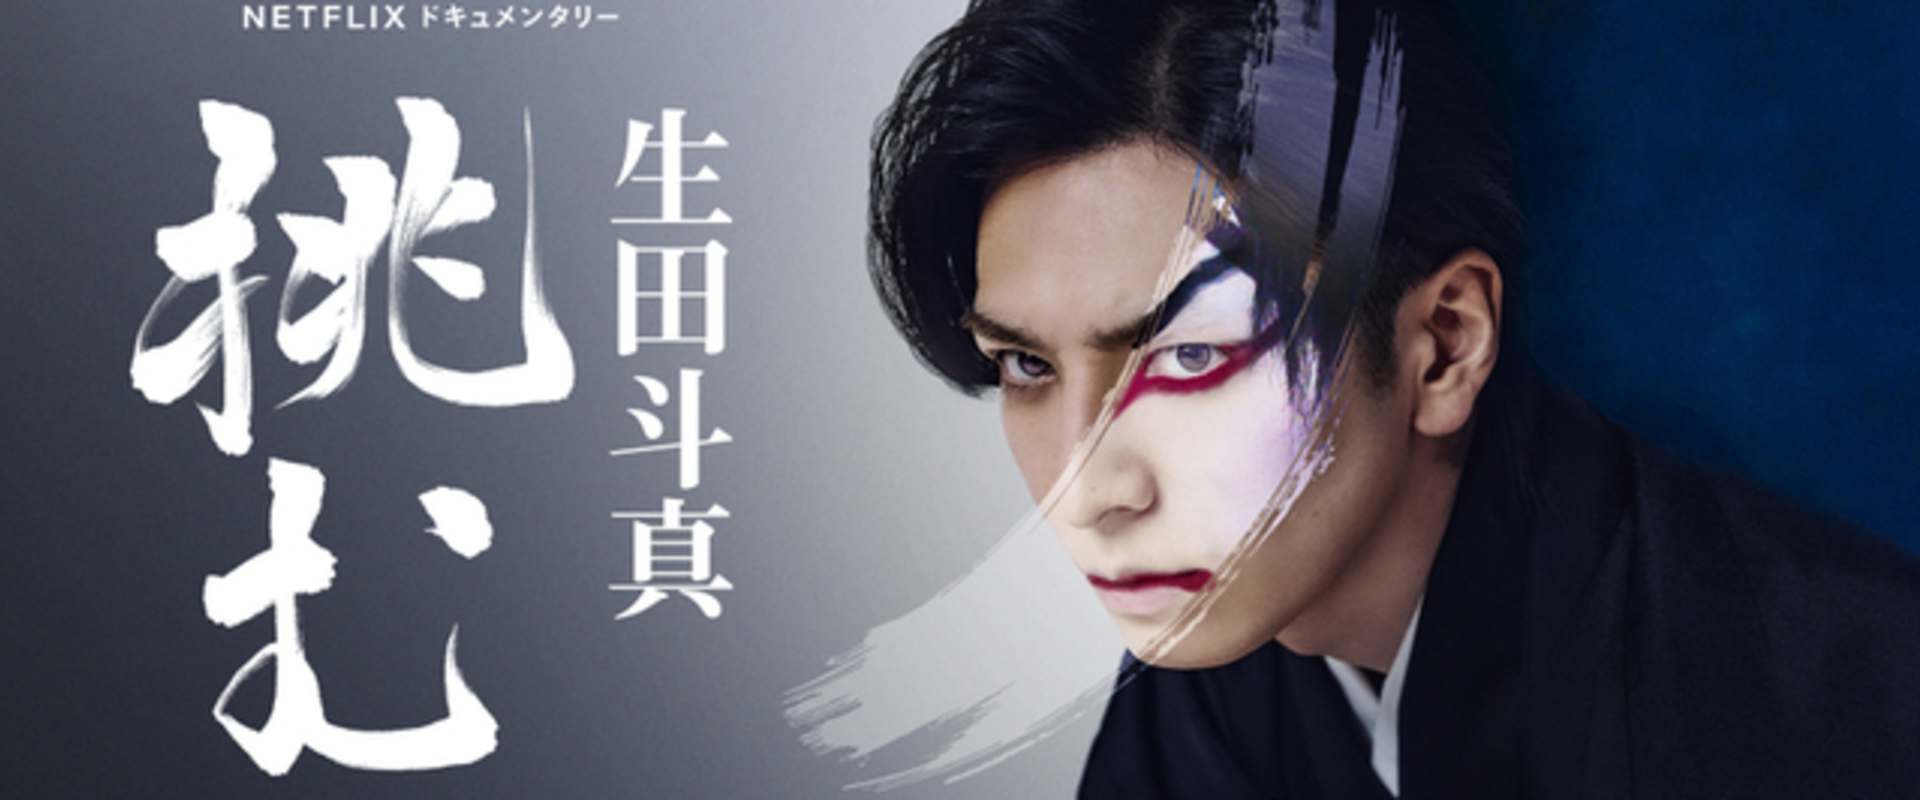 Sing, Dance, Act: Kabuki featuring Toma Ikuta background 1